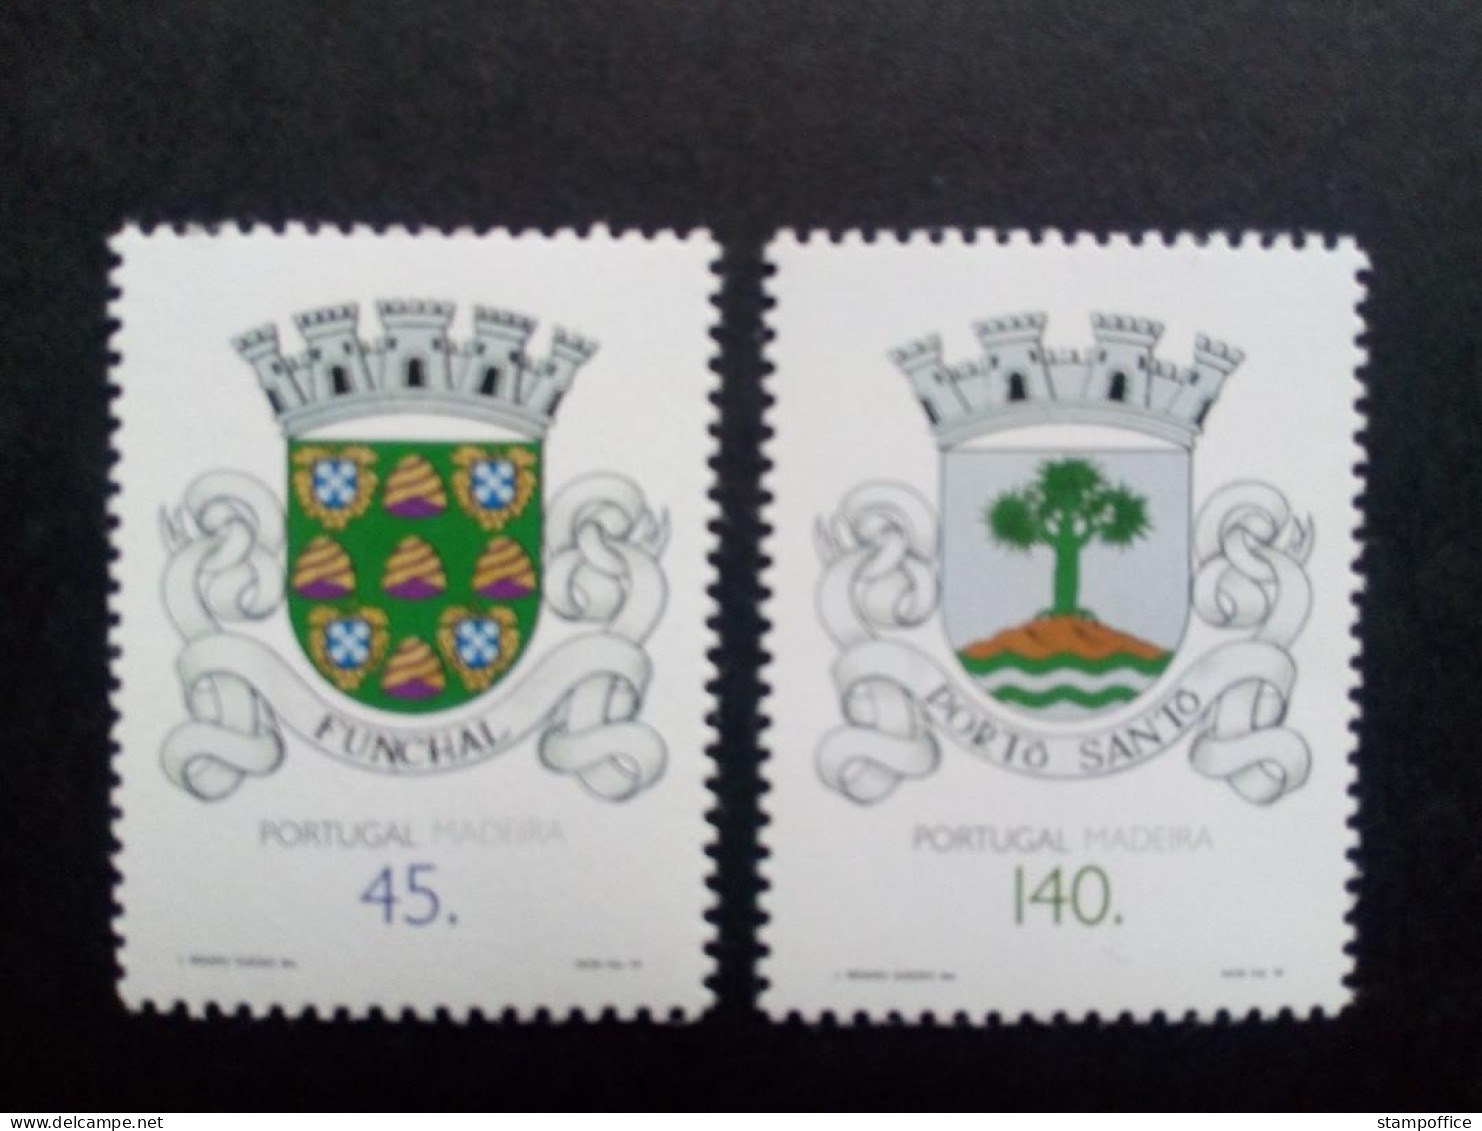 MADEIRA MI-NR. 176-177 POSTFRISCH GEMEINDEWAPPEN 1994 - Stamps